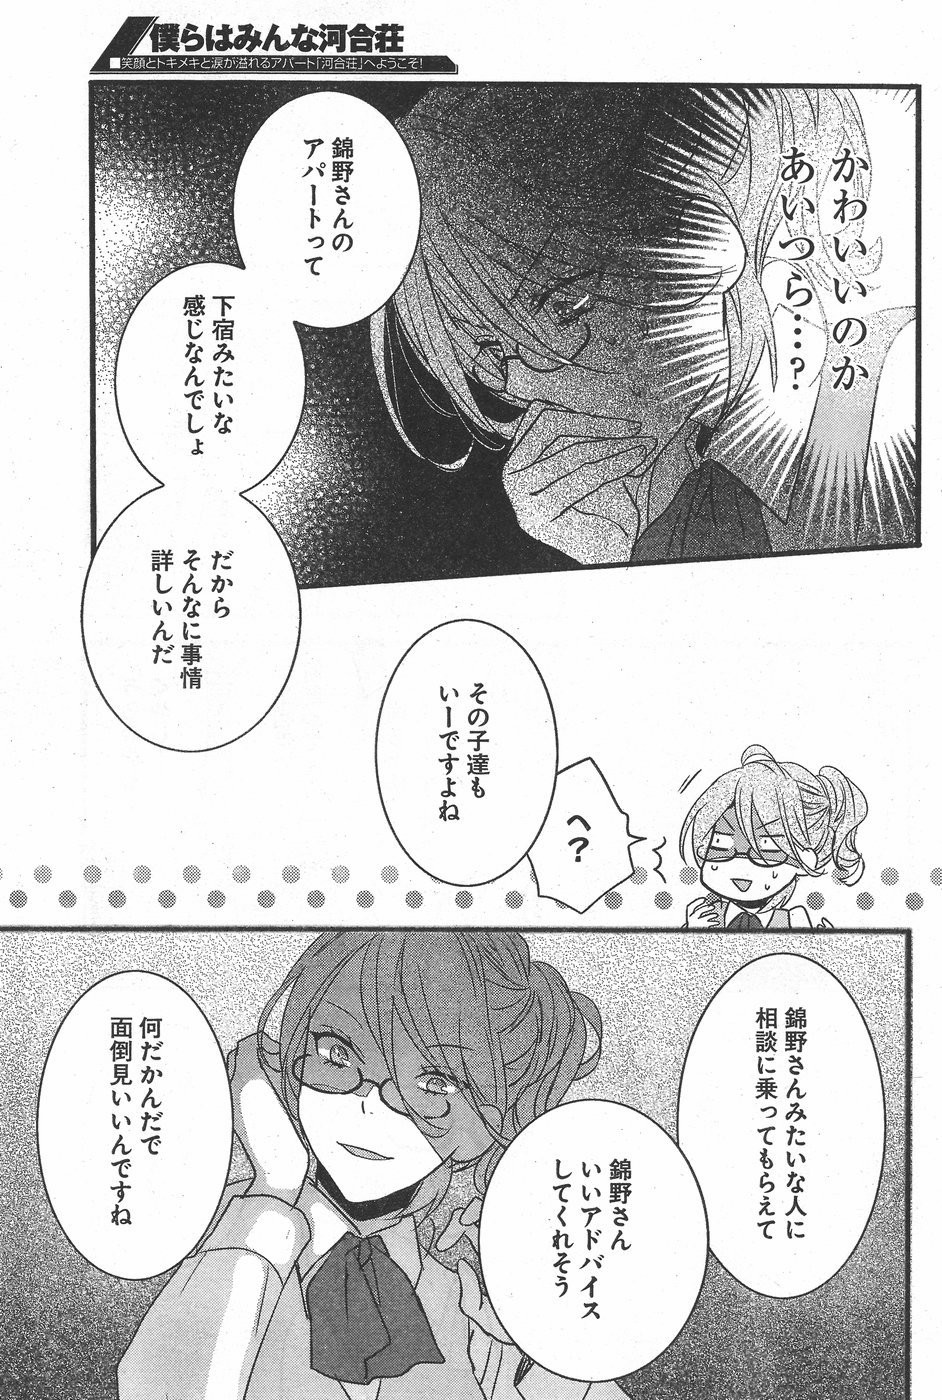 Bokura wa Minna Kawaisou - Chapter 71 - Page 9